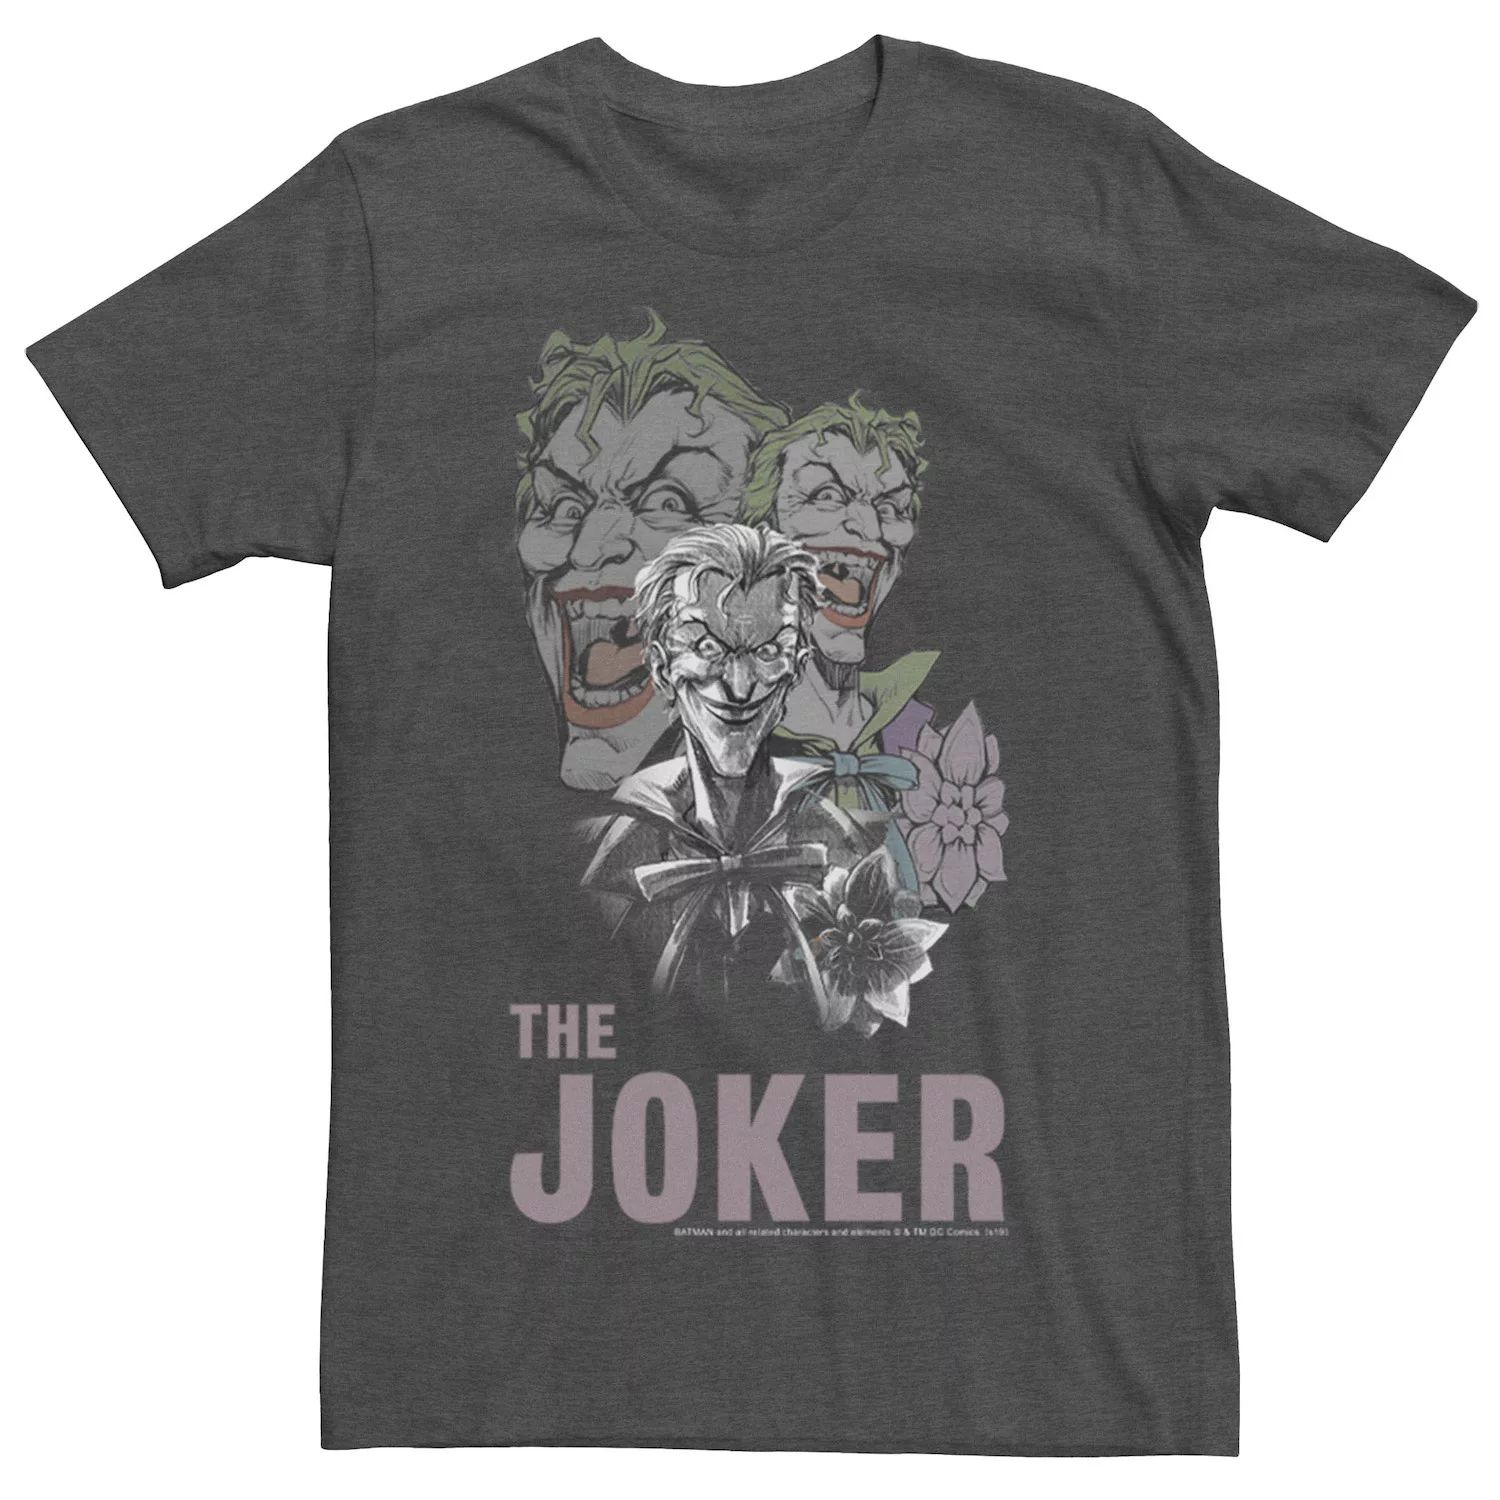 Мужская футболка с коллажем The Joker DC Comics